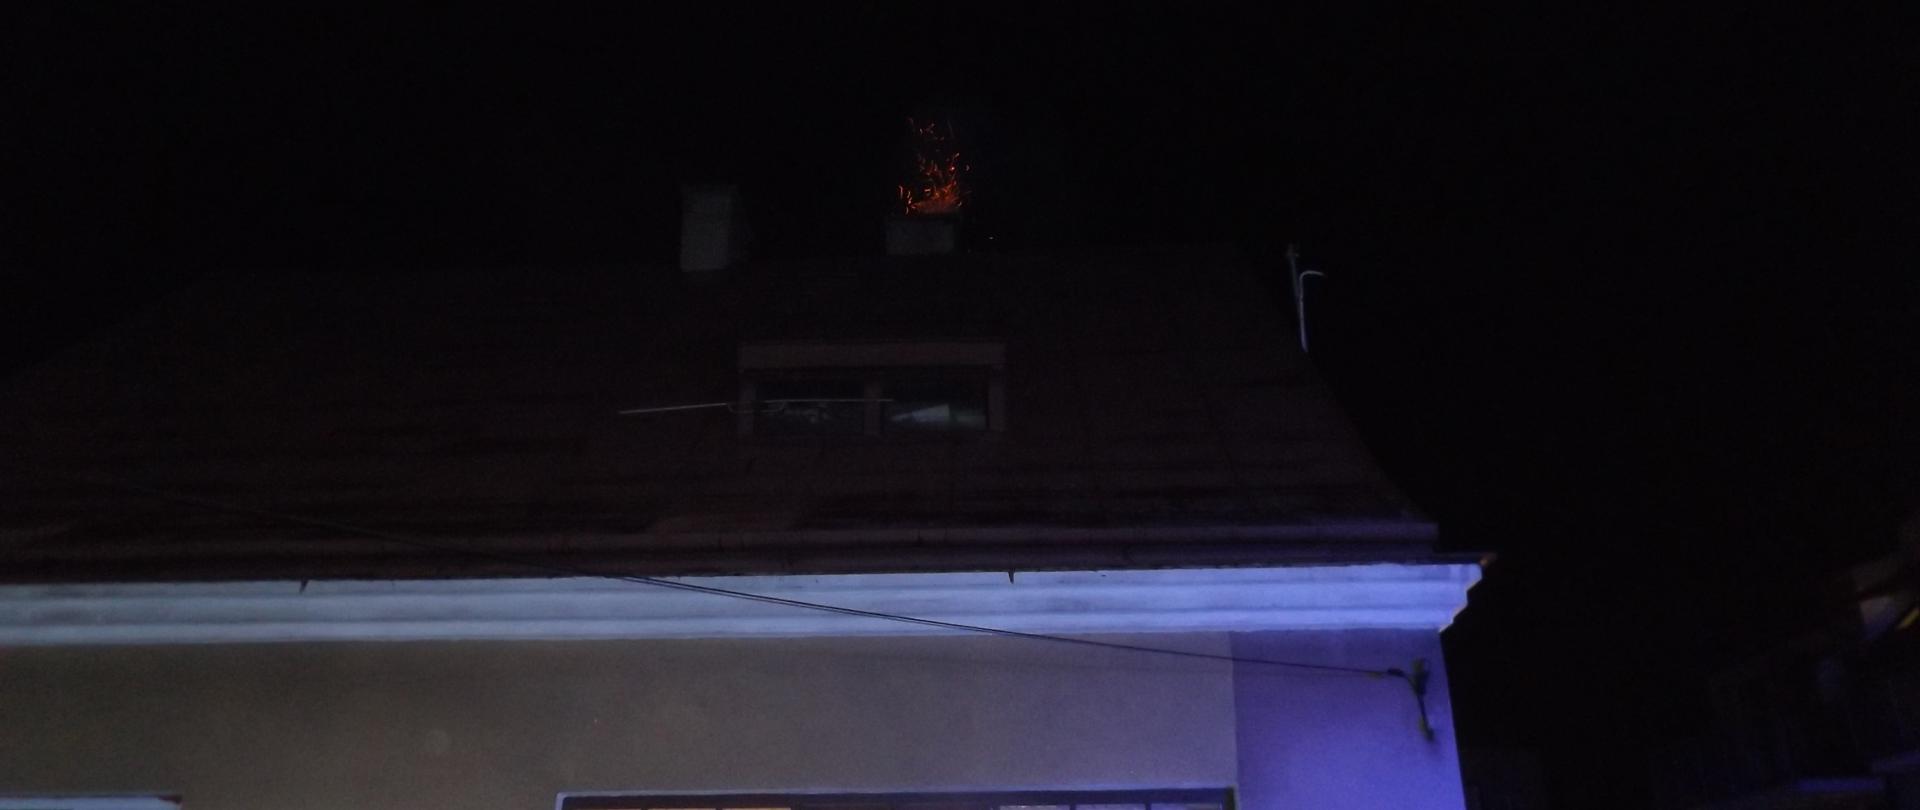 Na zdjęciu widzimy jednorodzinny budynek mieszkalny. Z komina sypią się iskry świadczące o pożarze sadzy w przewodzie kominowym